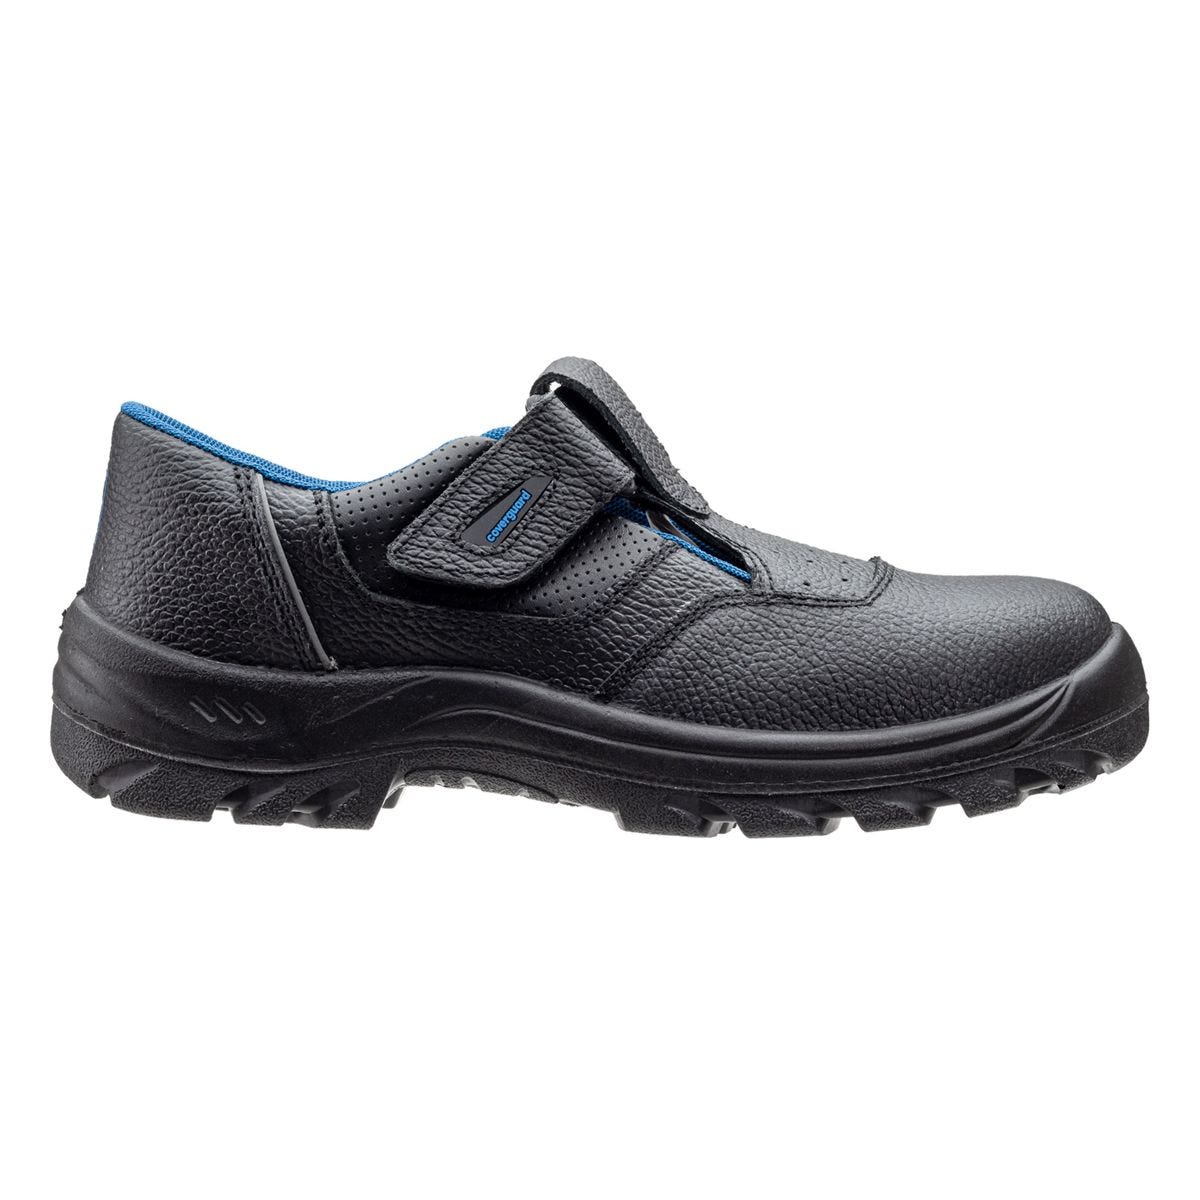 Sandales de sécurité basses Bosco II noir - Coverguard - Taille 41 1